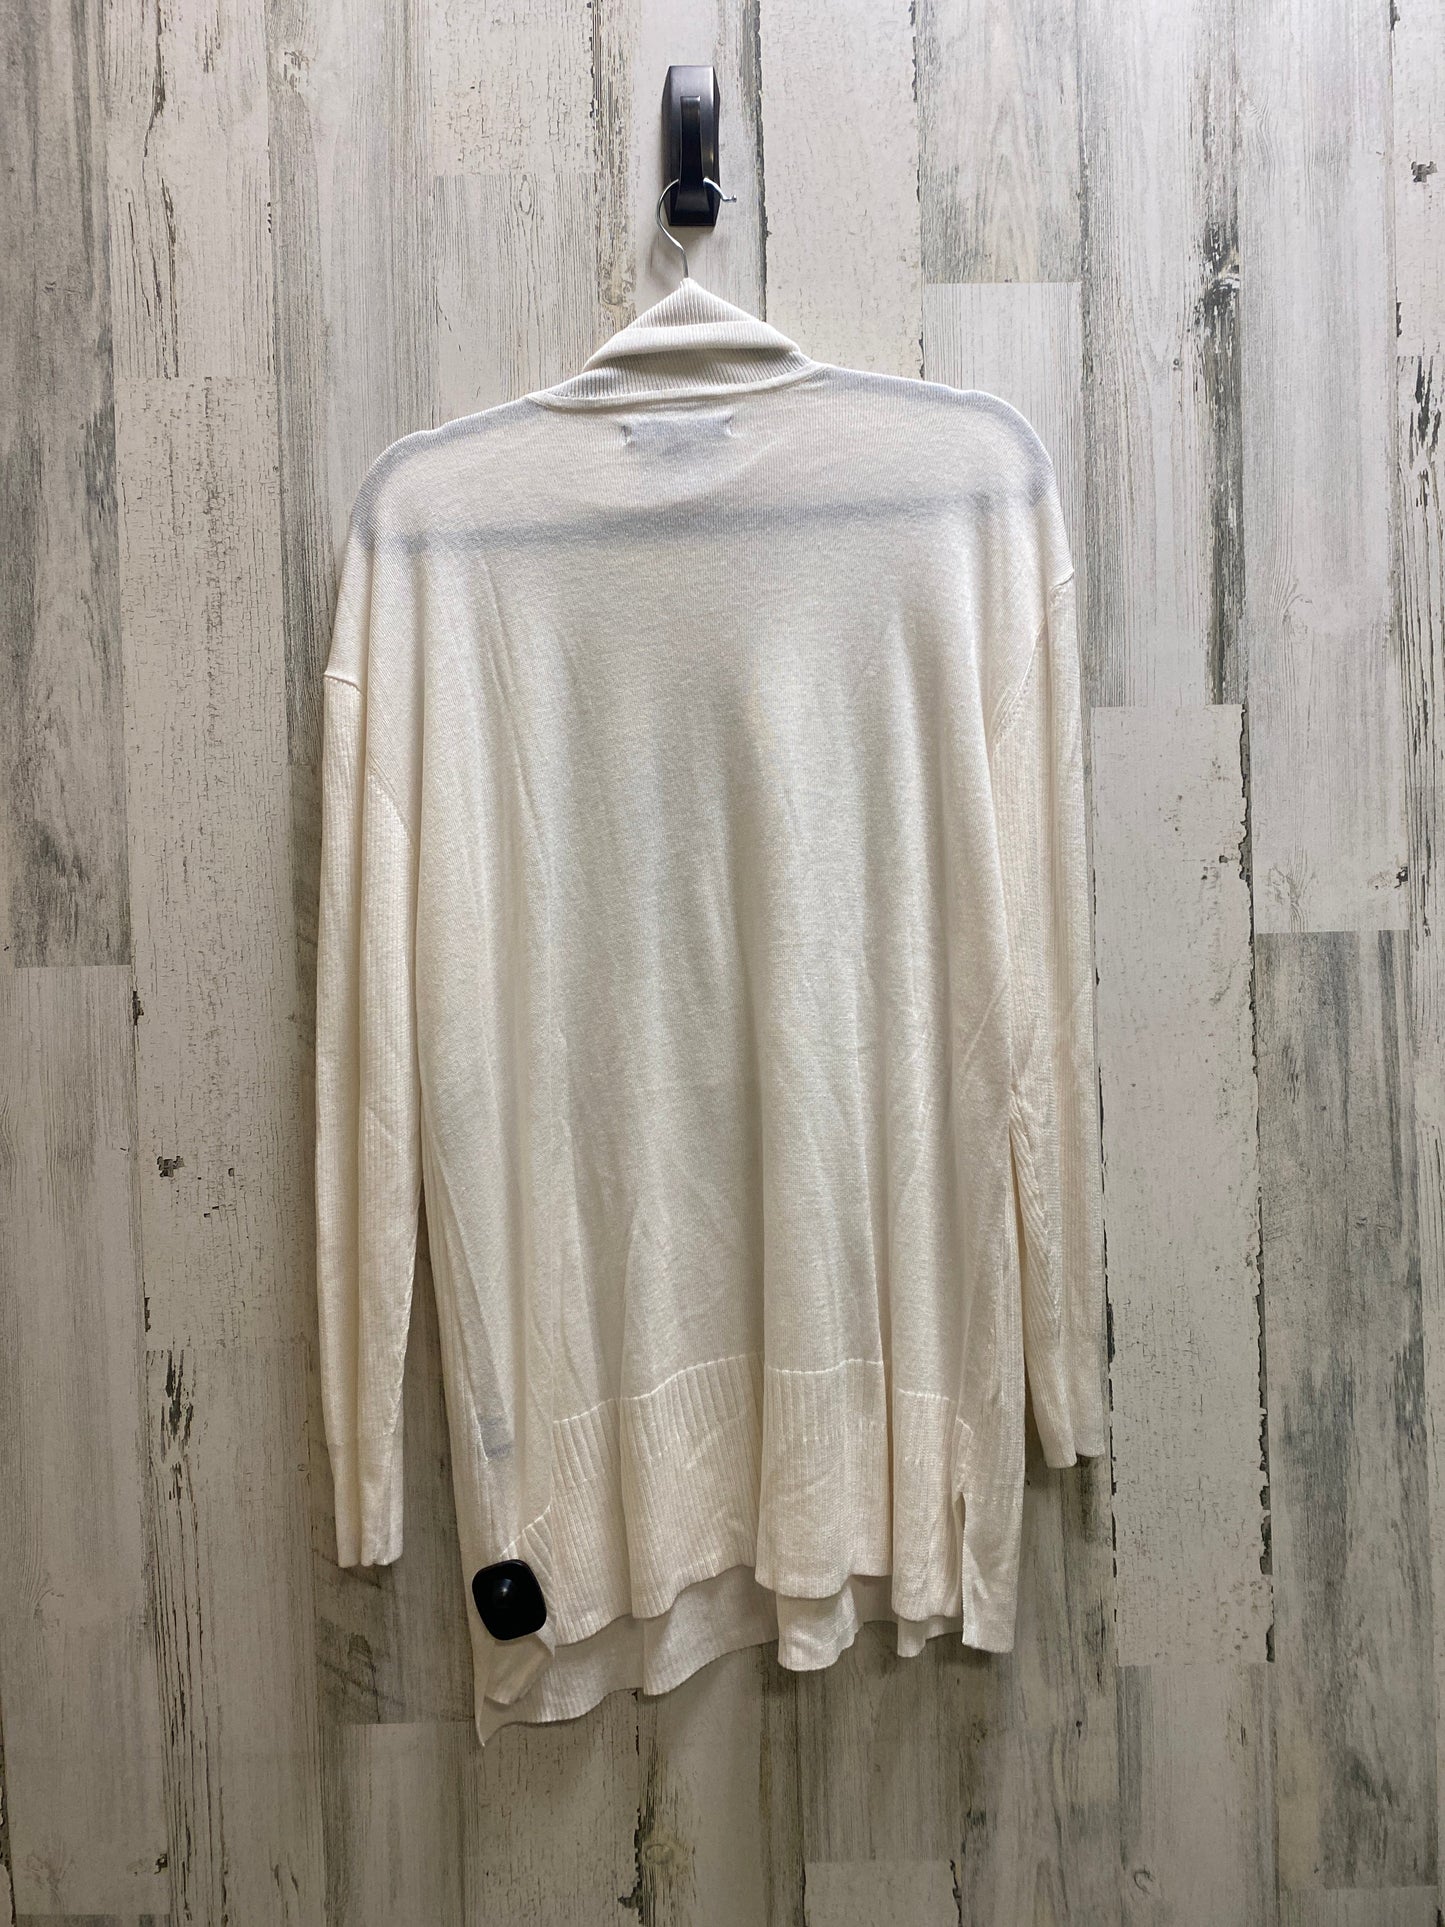 Sweater By Apt 9  Size: 2x